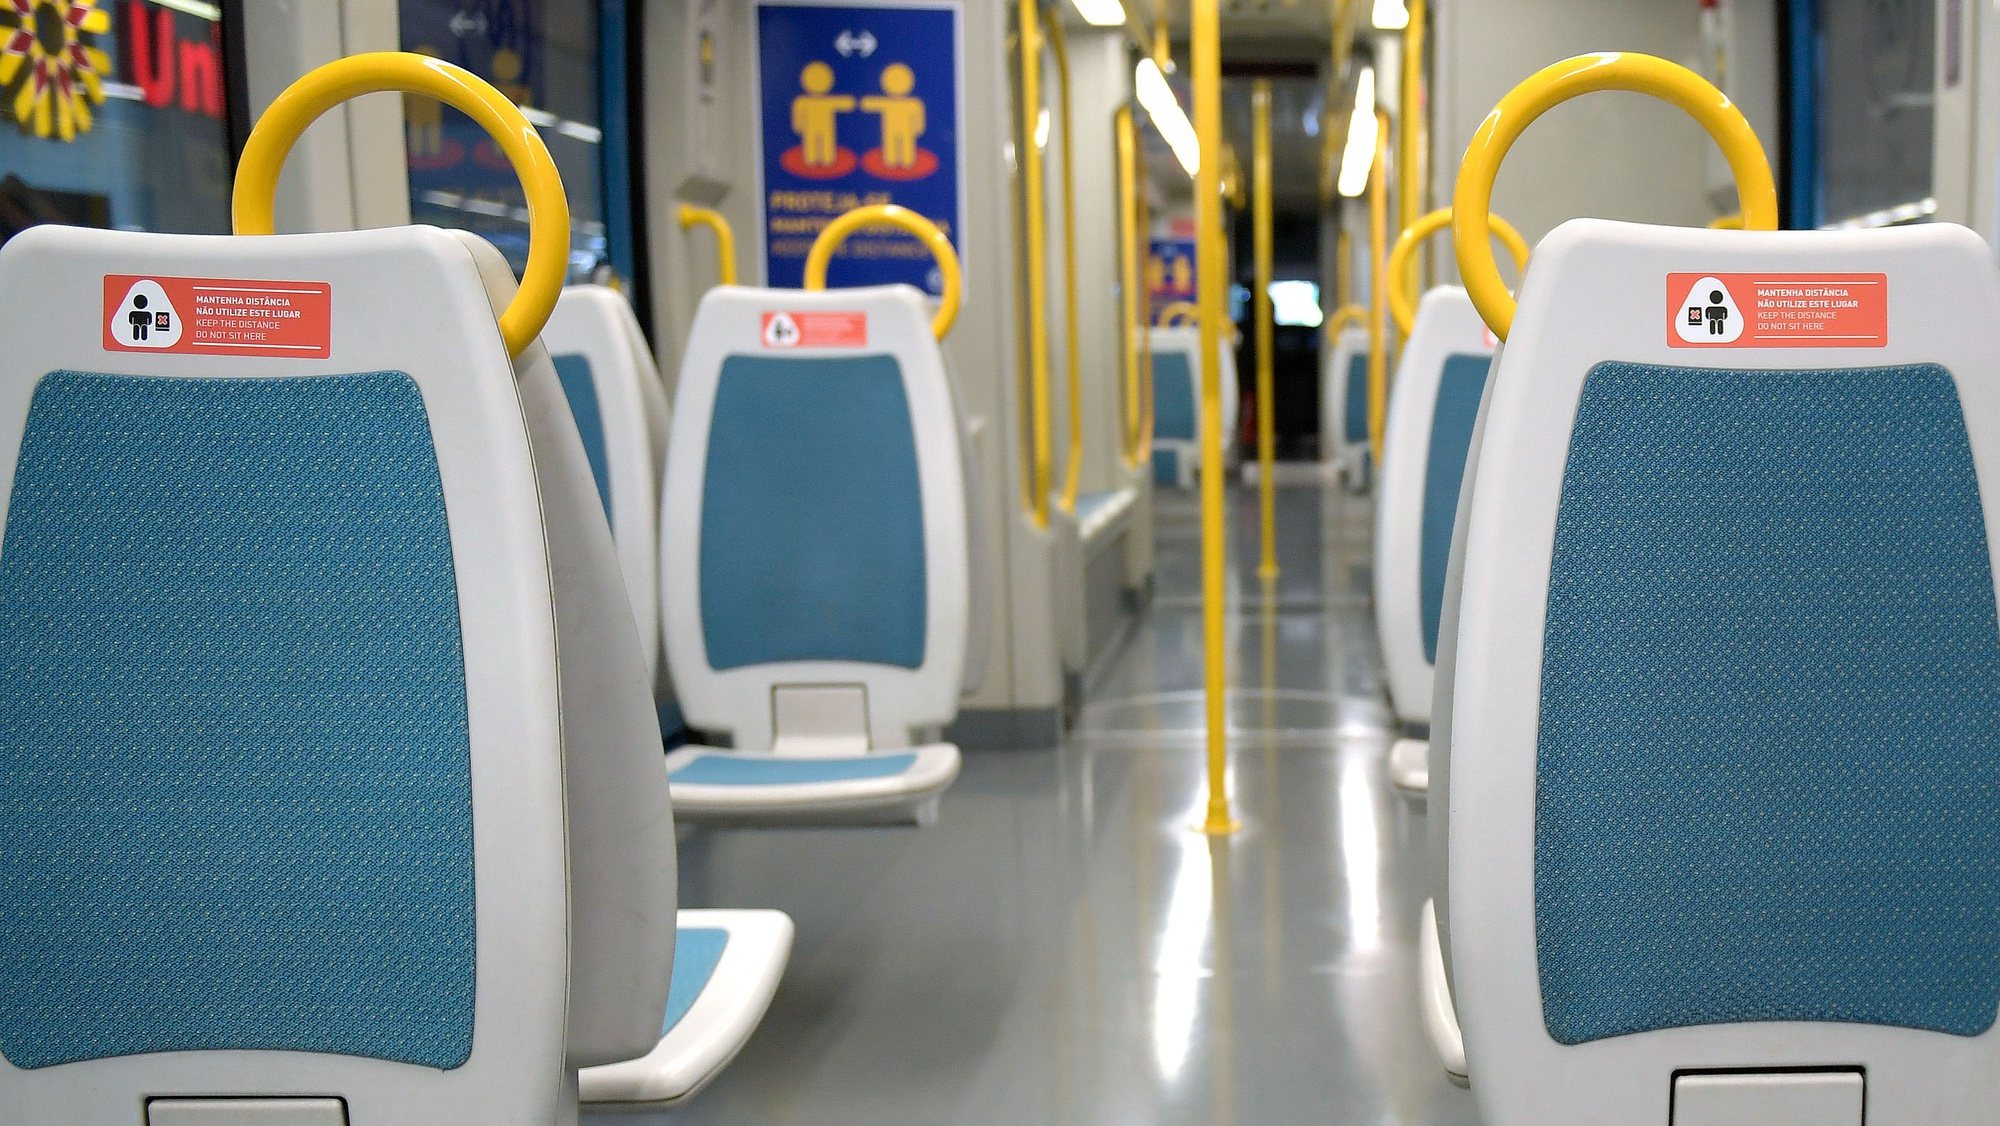 Indicações aos passageiros numa carruagem do Metro do Porto, na estação da Trindade